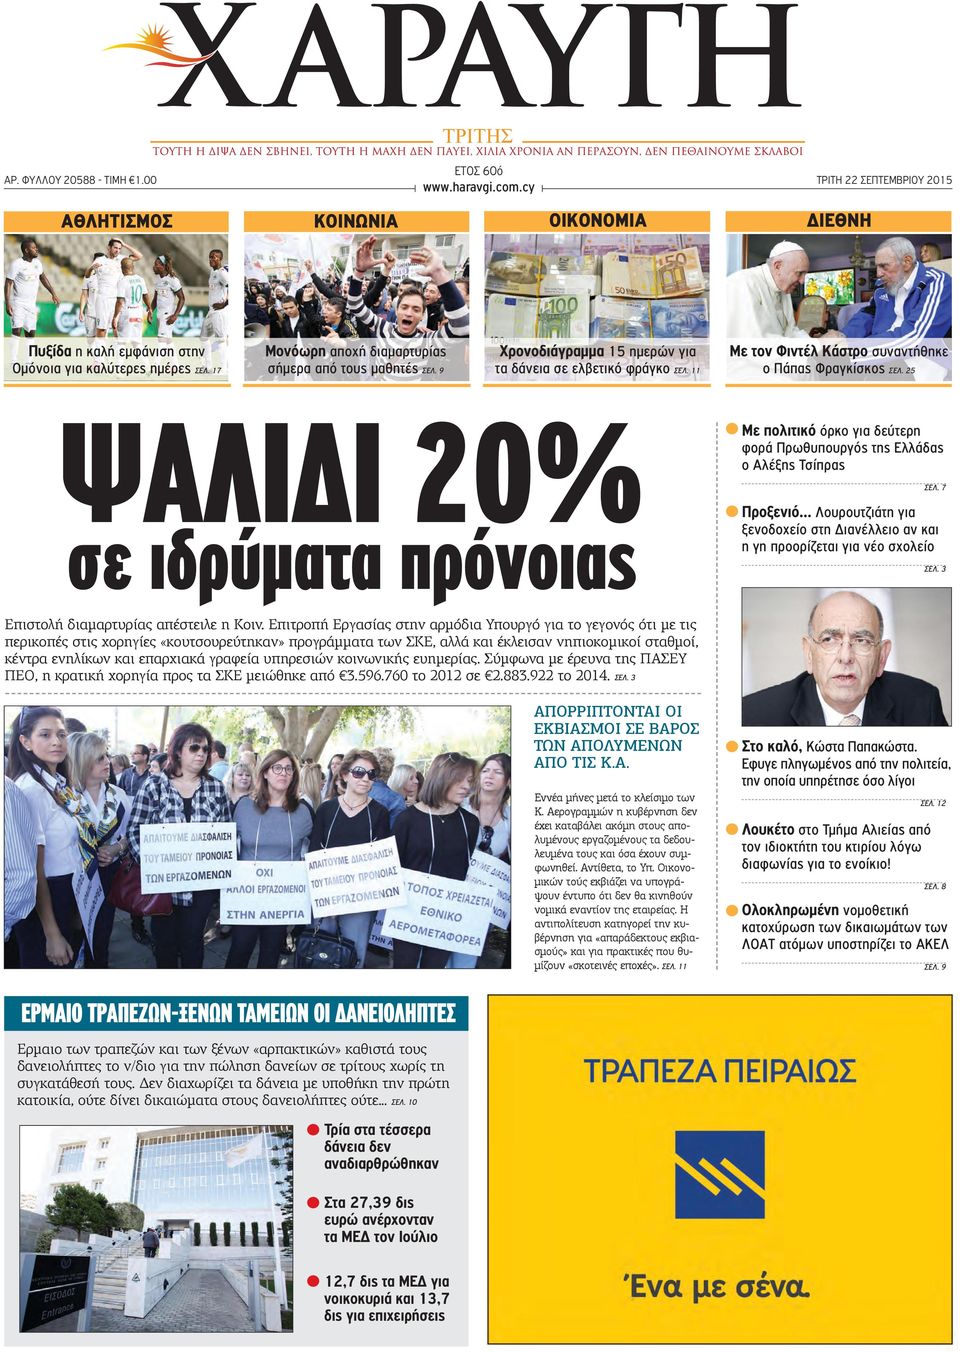 25 ΨΑΛΙΔΙ 20% σε ιδρύματα πρόνοιας Με πολιτικό όρκο για δεύτερη φορά Πρωθυπουργός της Ελλάδας ο Αλέξης Τσίπρας ΣΕΛ. 7 Προξενιό.